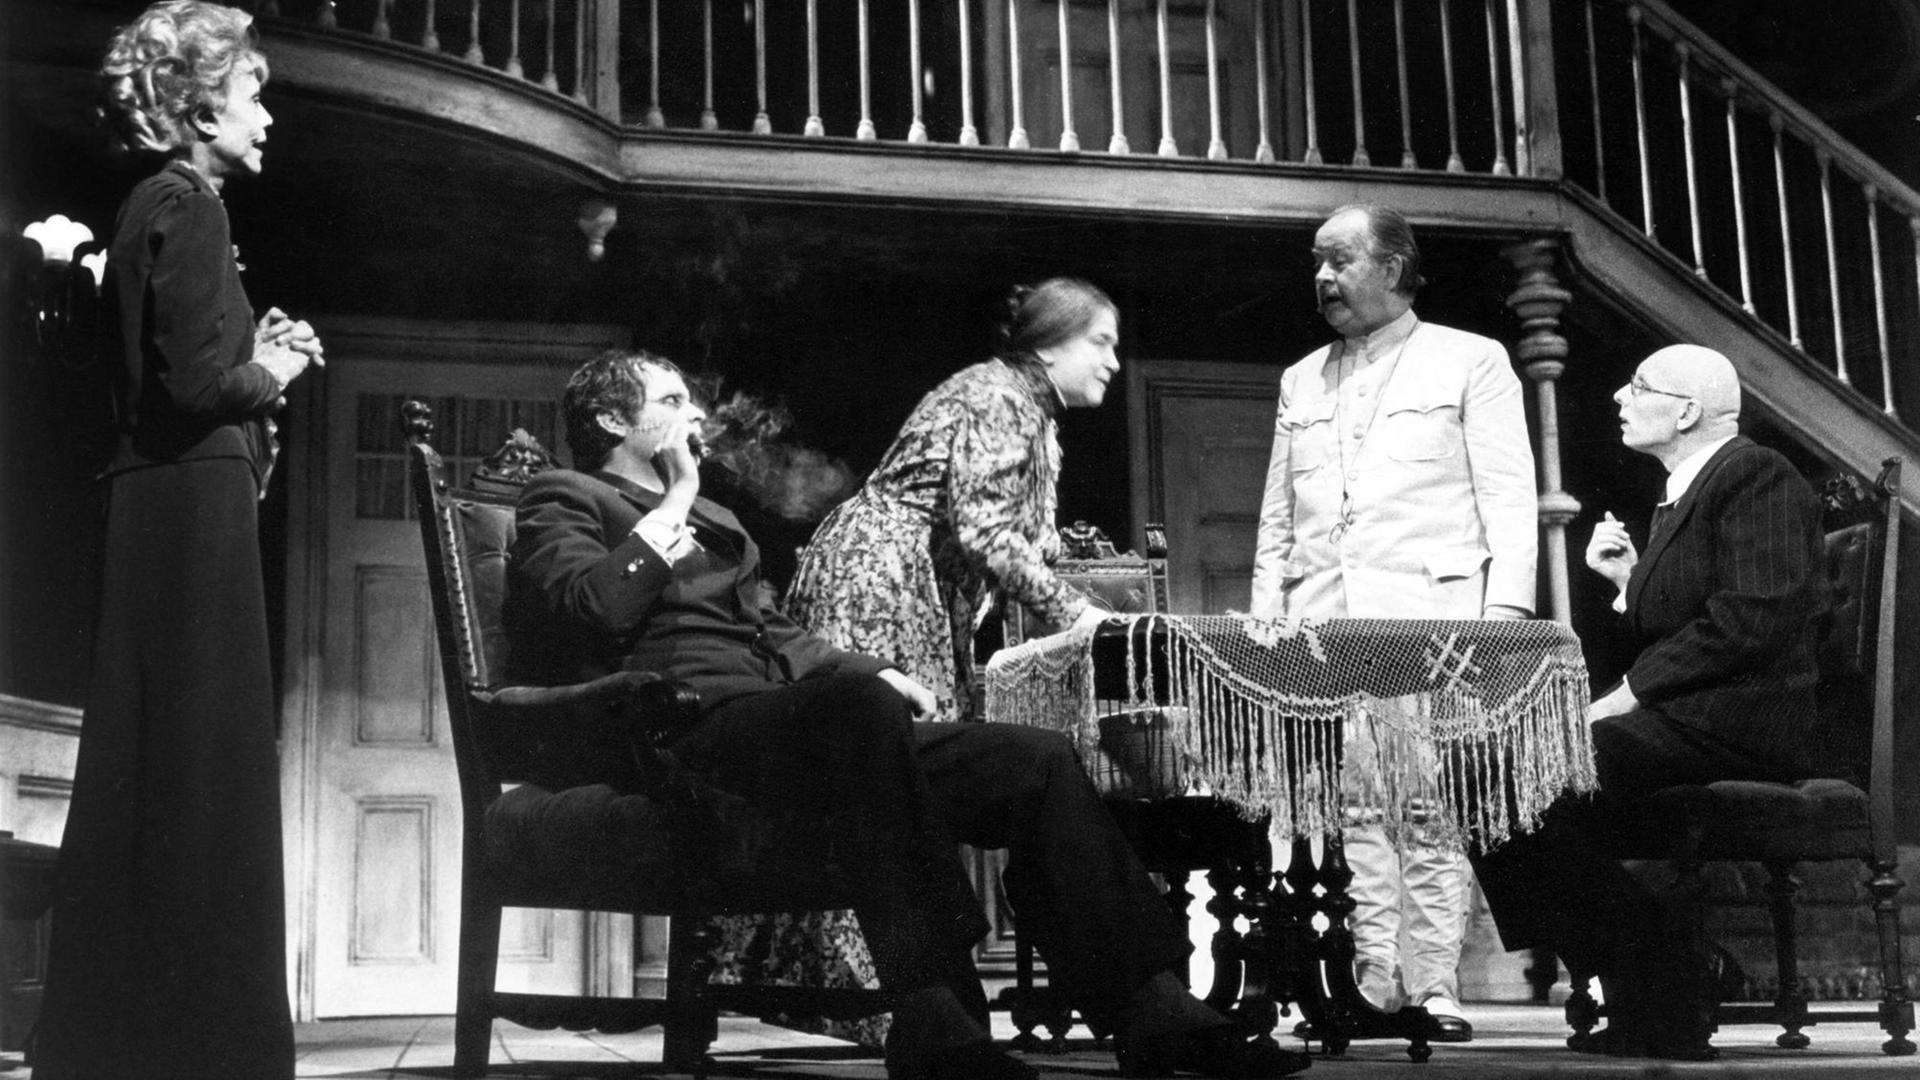 Szene aus dem Theaterstück "Arsen und Spitzenhäubchen" aus einer Aufführung der Münchner Kammerspiele 1969